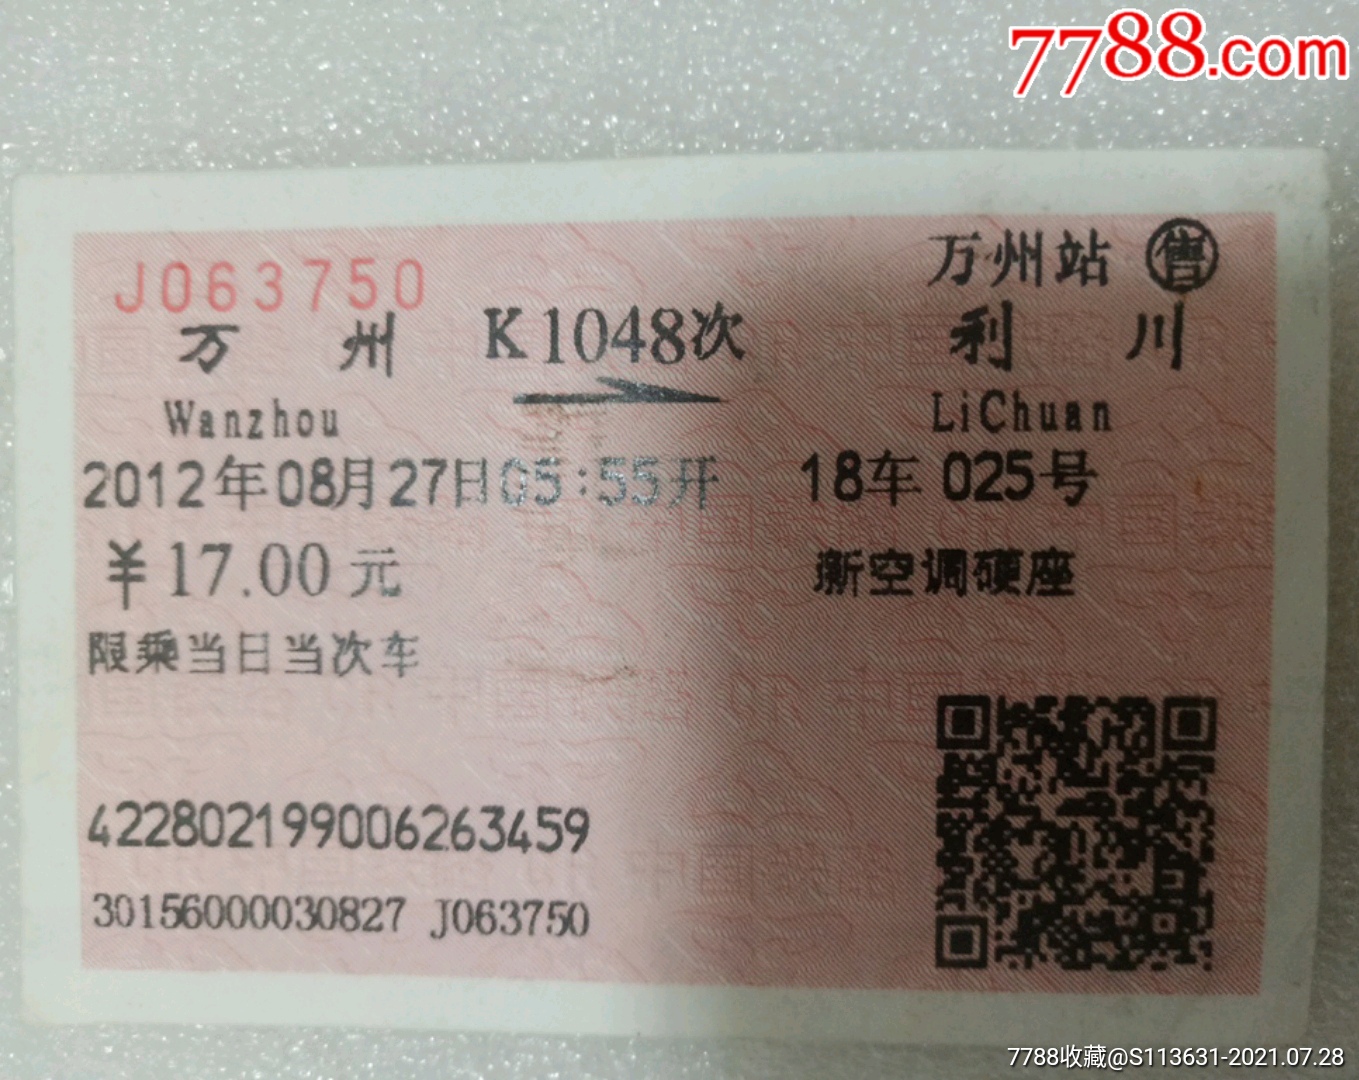 k1048火车座位图图片